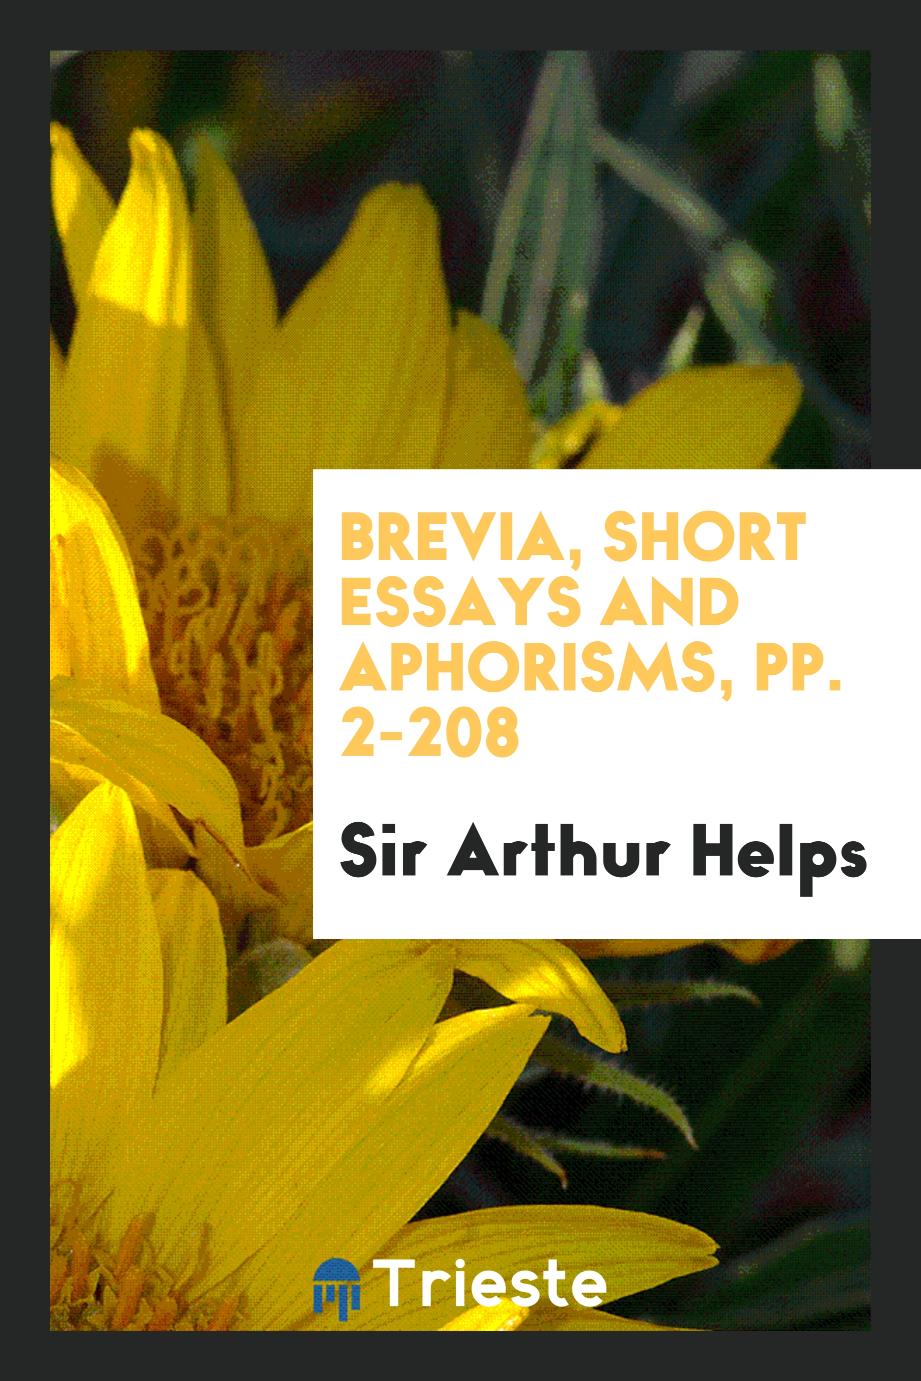 Brevia, Short Essays and Aphorisms, pp. 2-208